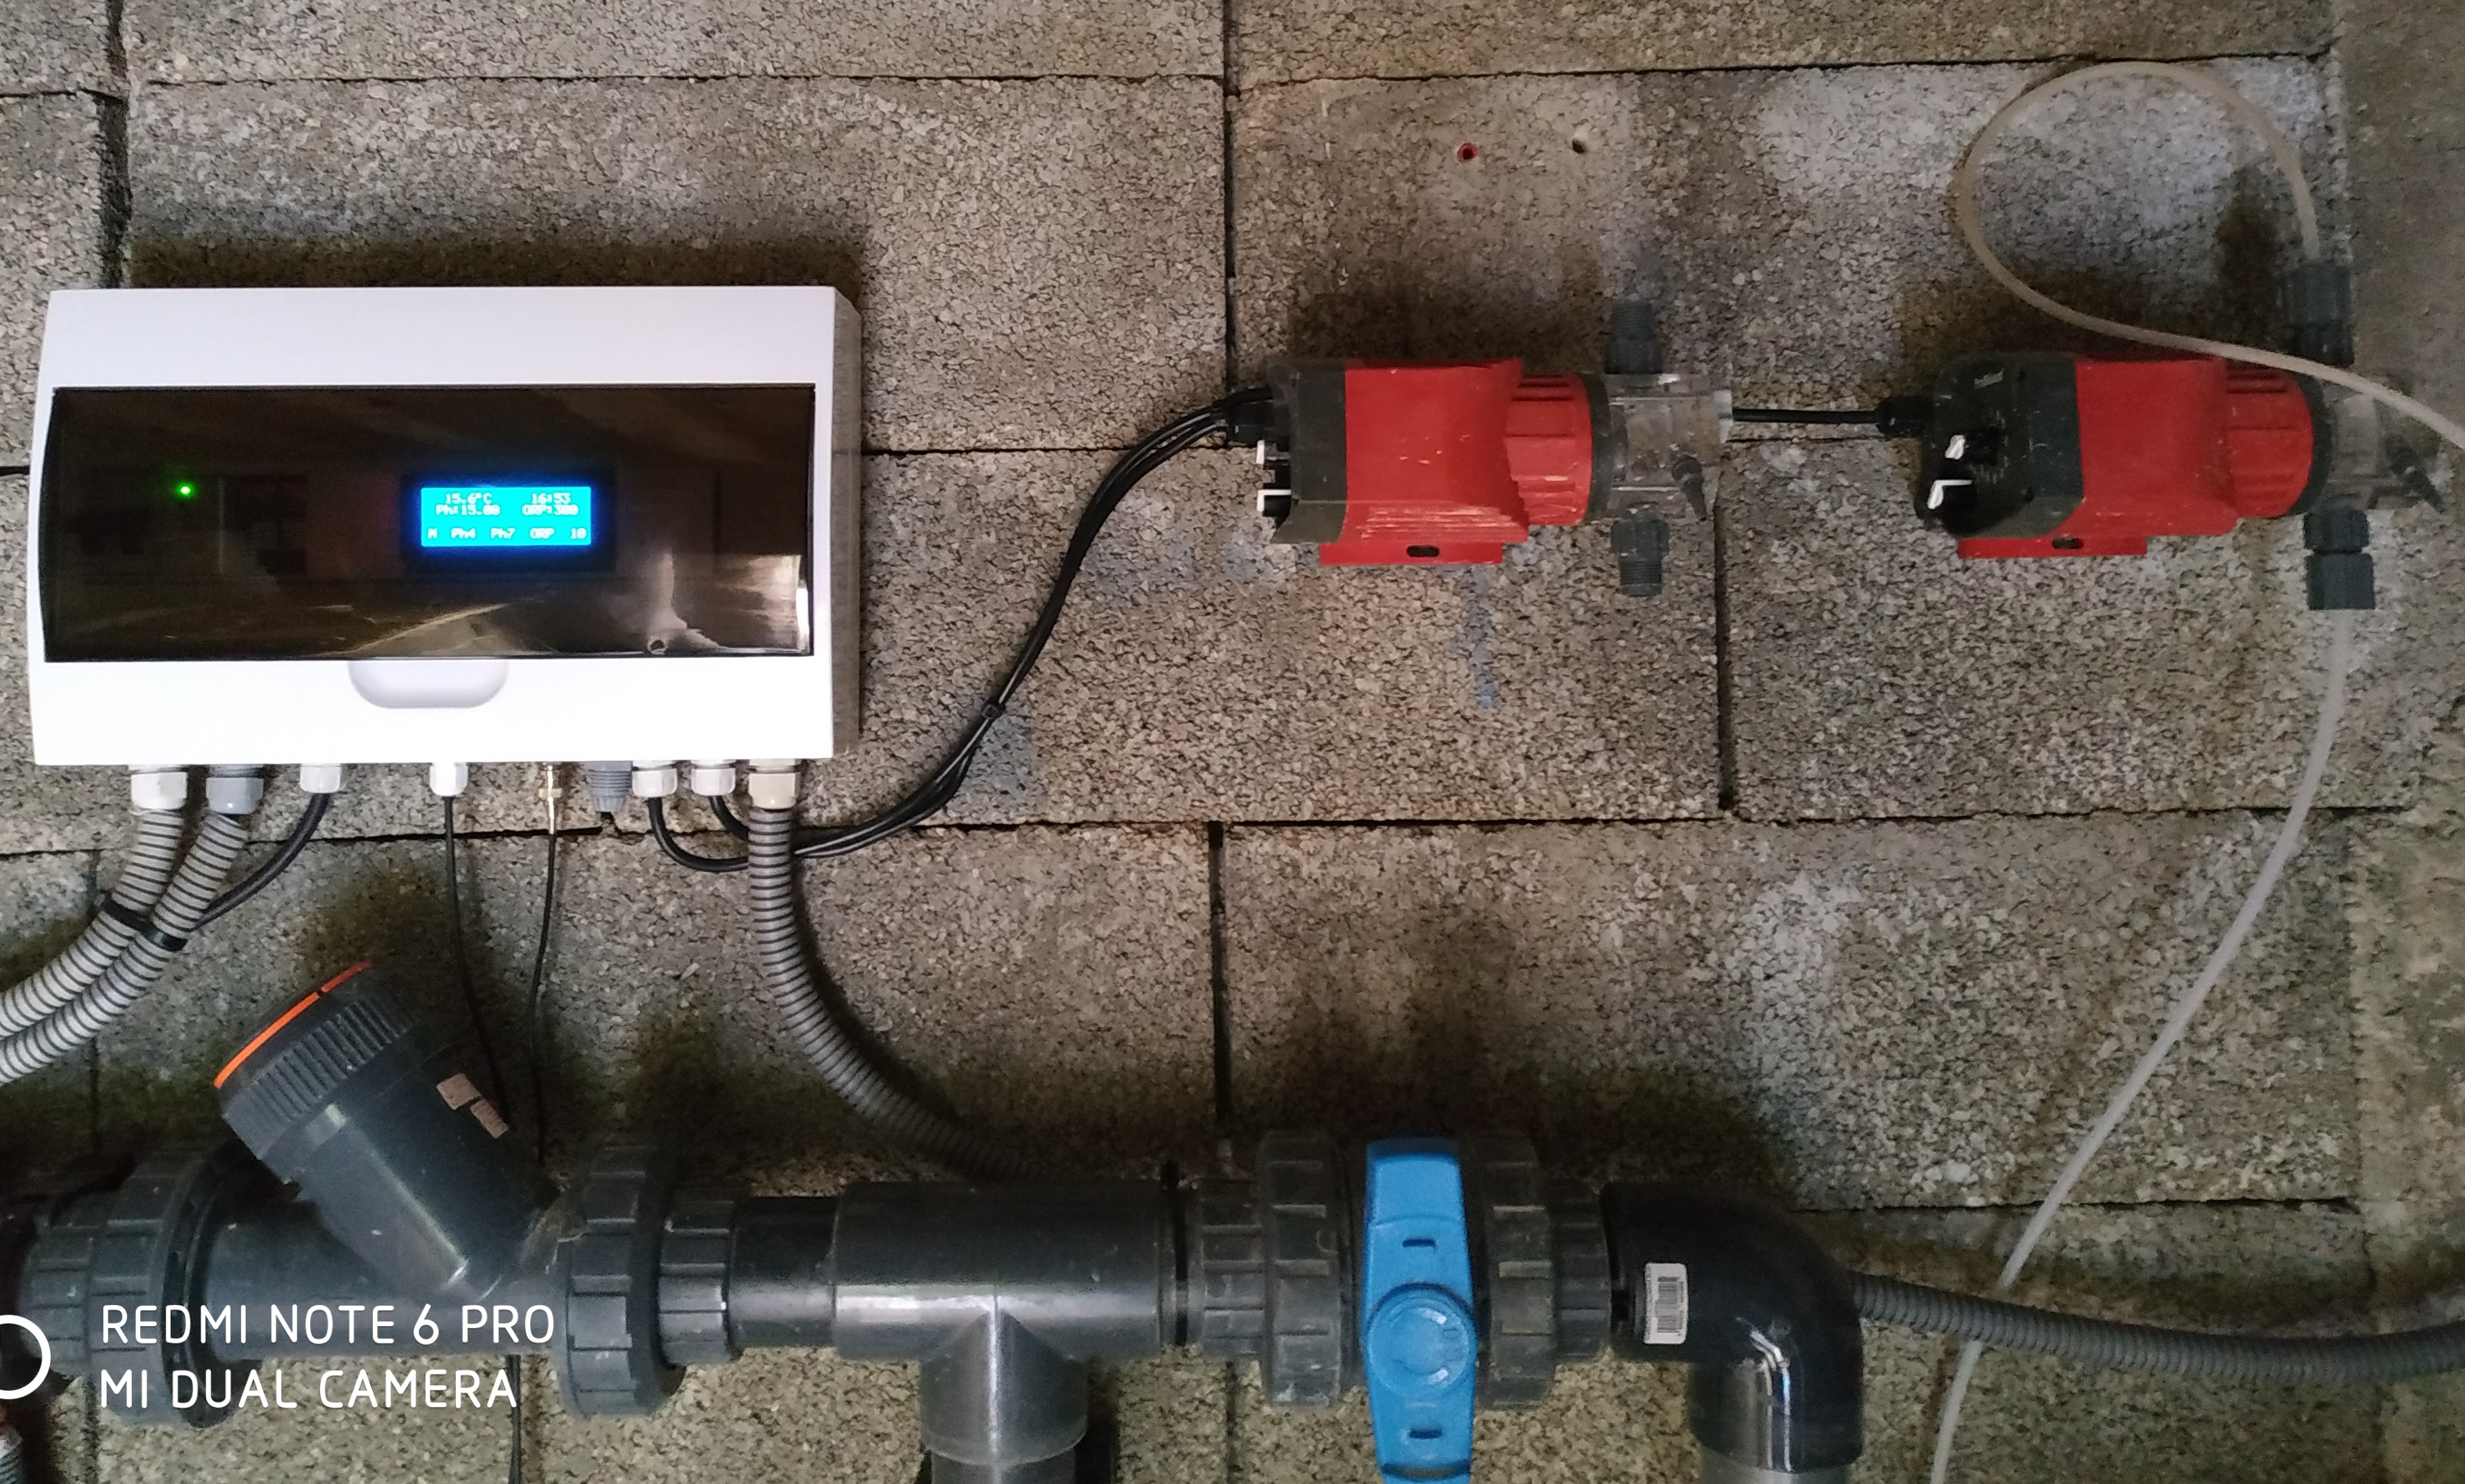 Noeud MYSensors Piscine et charge totale de lé régulation (PH, ORP, temps de filtration f(température), avec variateur de vitesse de la pompe en fonction de l'énergie disponible.